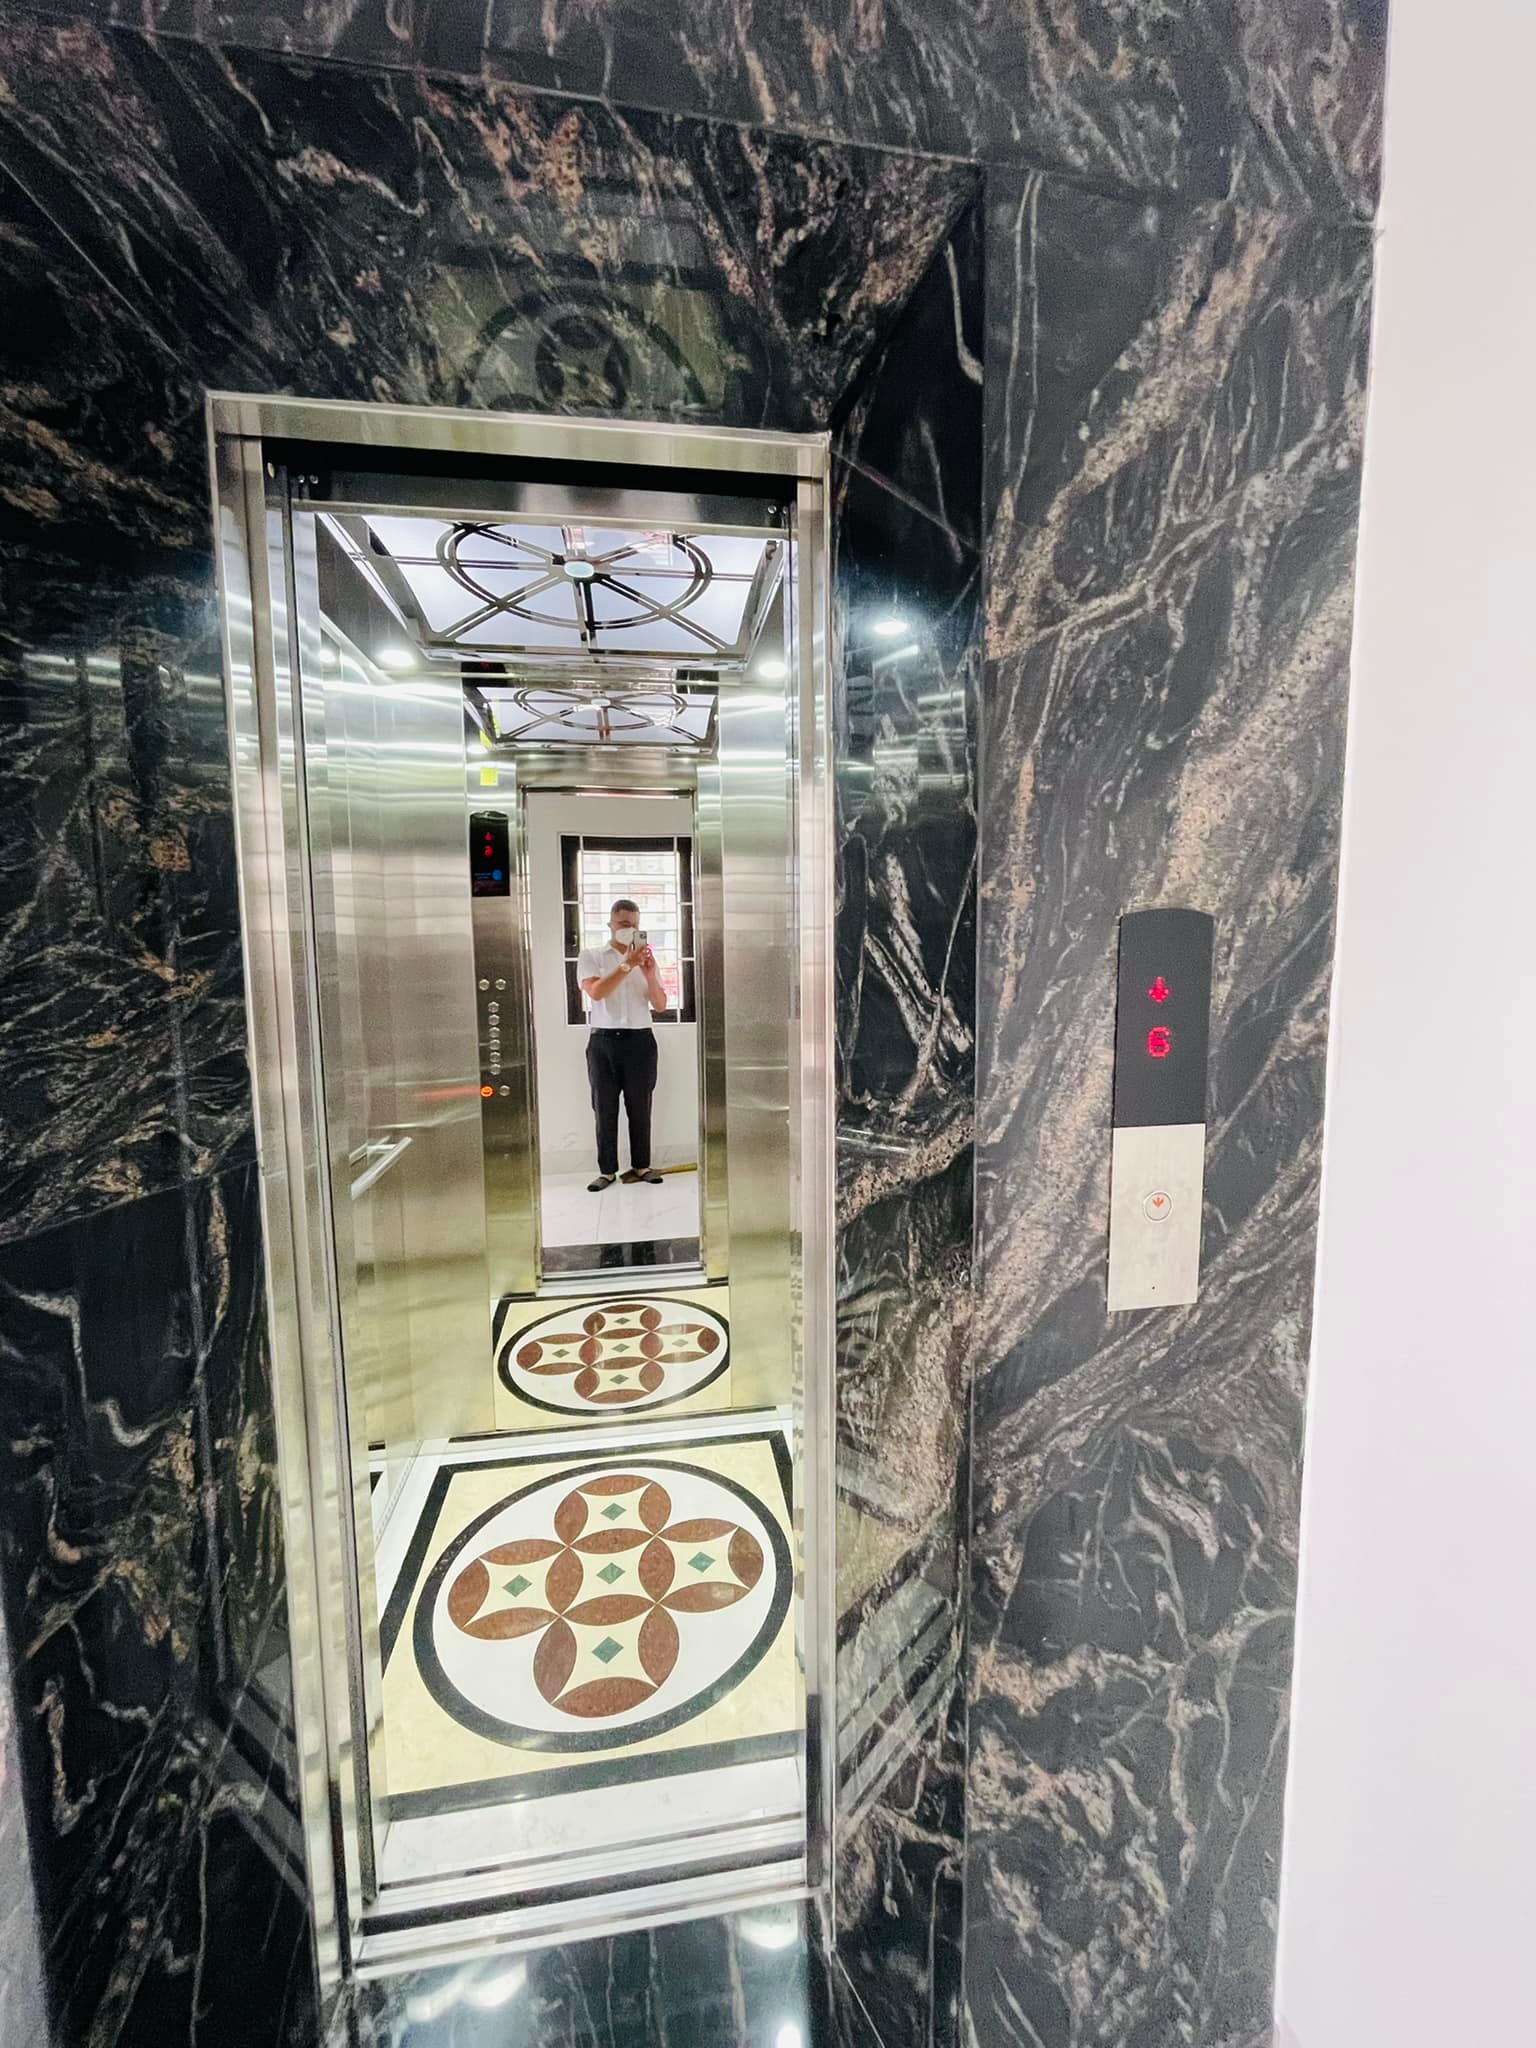 Bán nhà phố Hà Hồi Hoàn Kiếm 6tg, thang máy, nhà siêu đẹp, mặt tiền rộng 16 tỷ